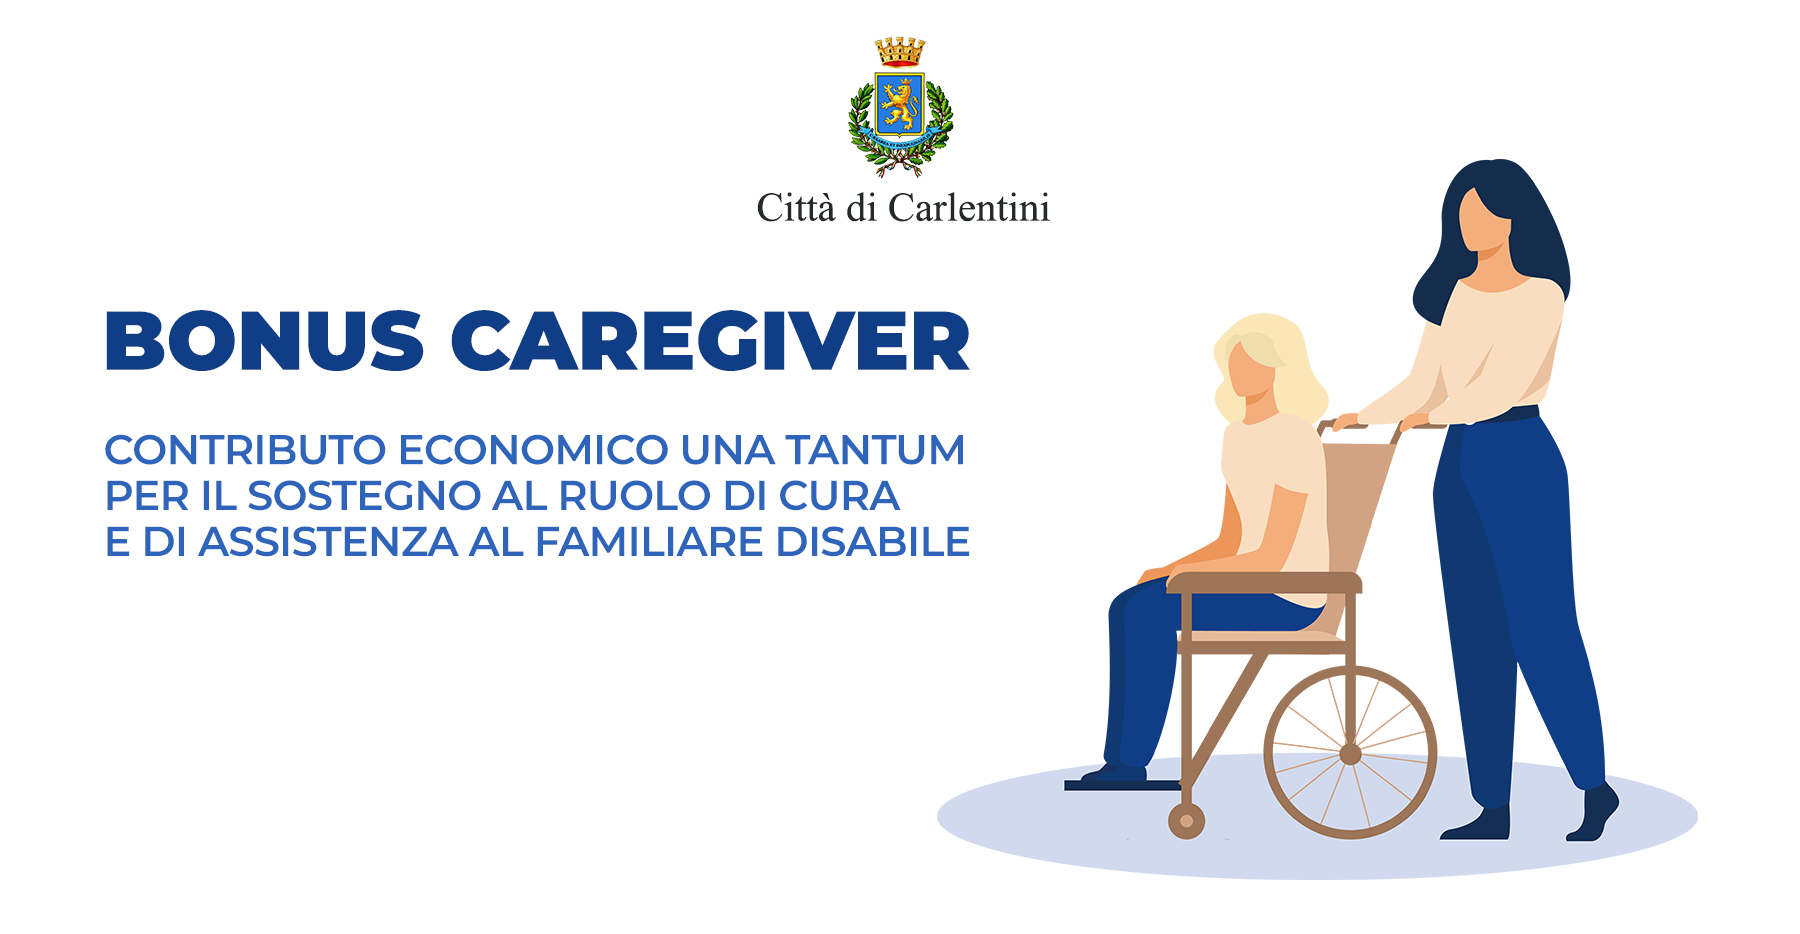 Bonus Caregiver: contributo per il sostegno al ruolo di cura e assistenza al familiare disabile